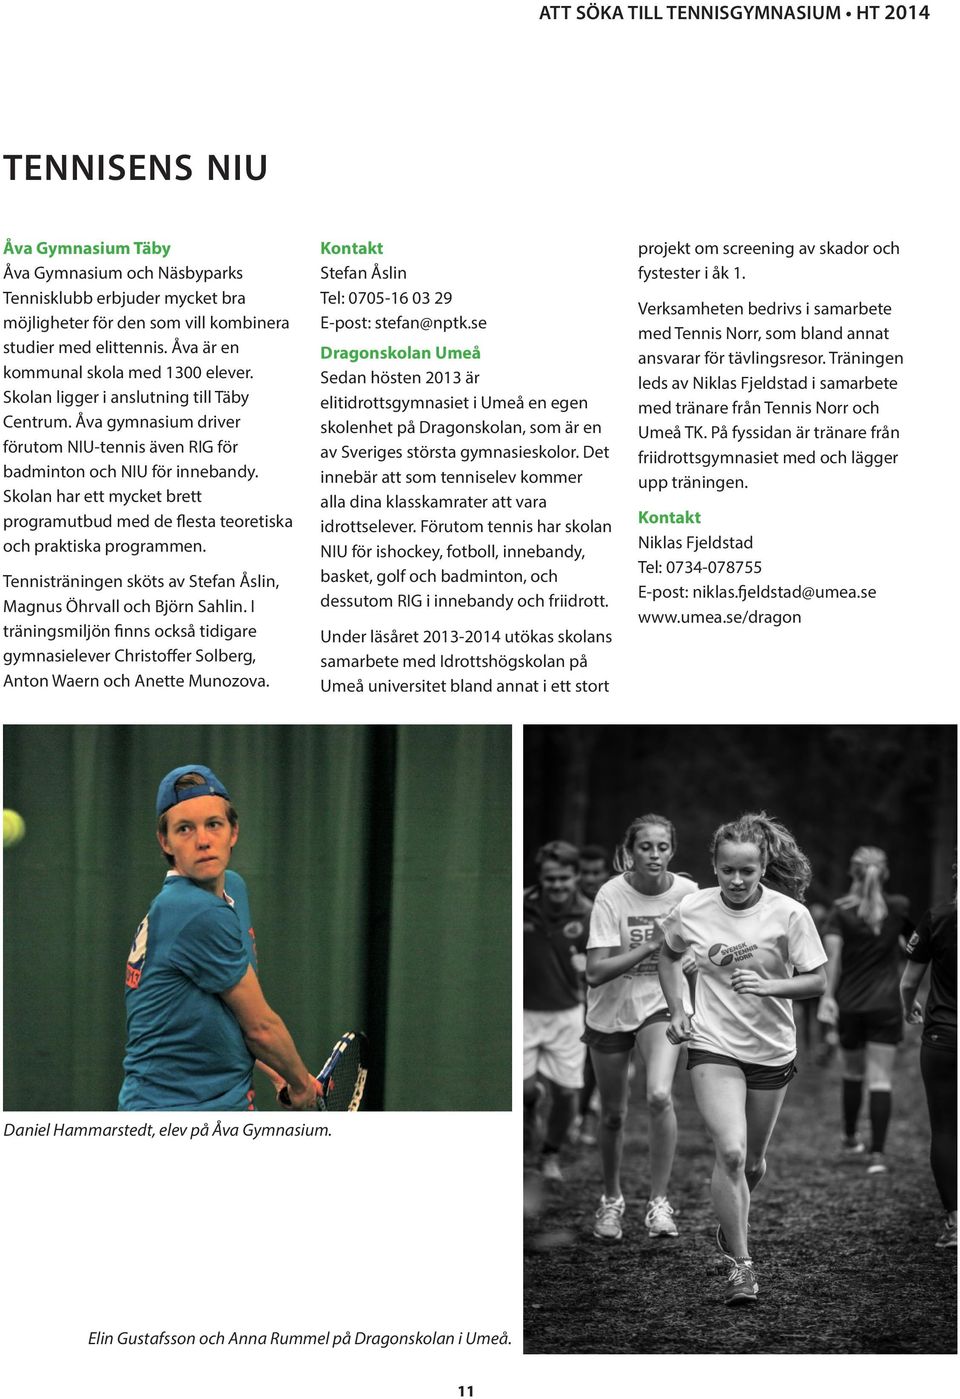 Skolan har ett mycket brett programutbud med de flesta teoretiska och praktiska programmen. Tennisträningen sköts av Stefan Åslin, Magnus Öhrvall och Björn Sahlin.